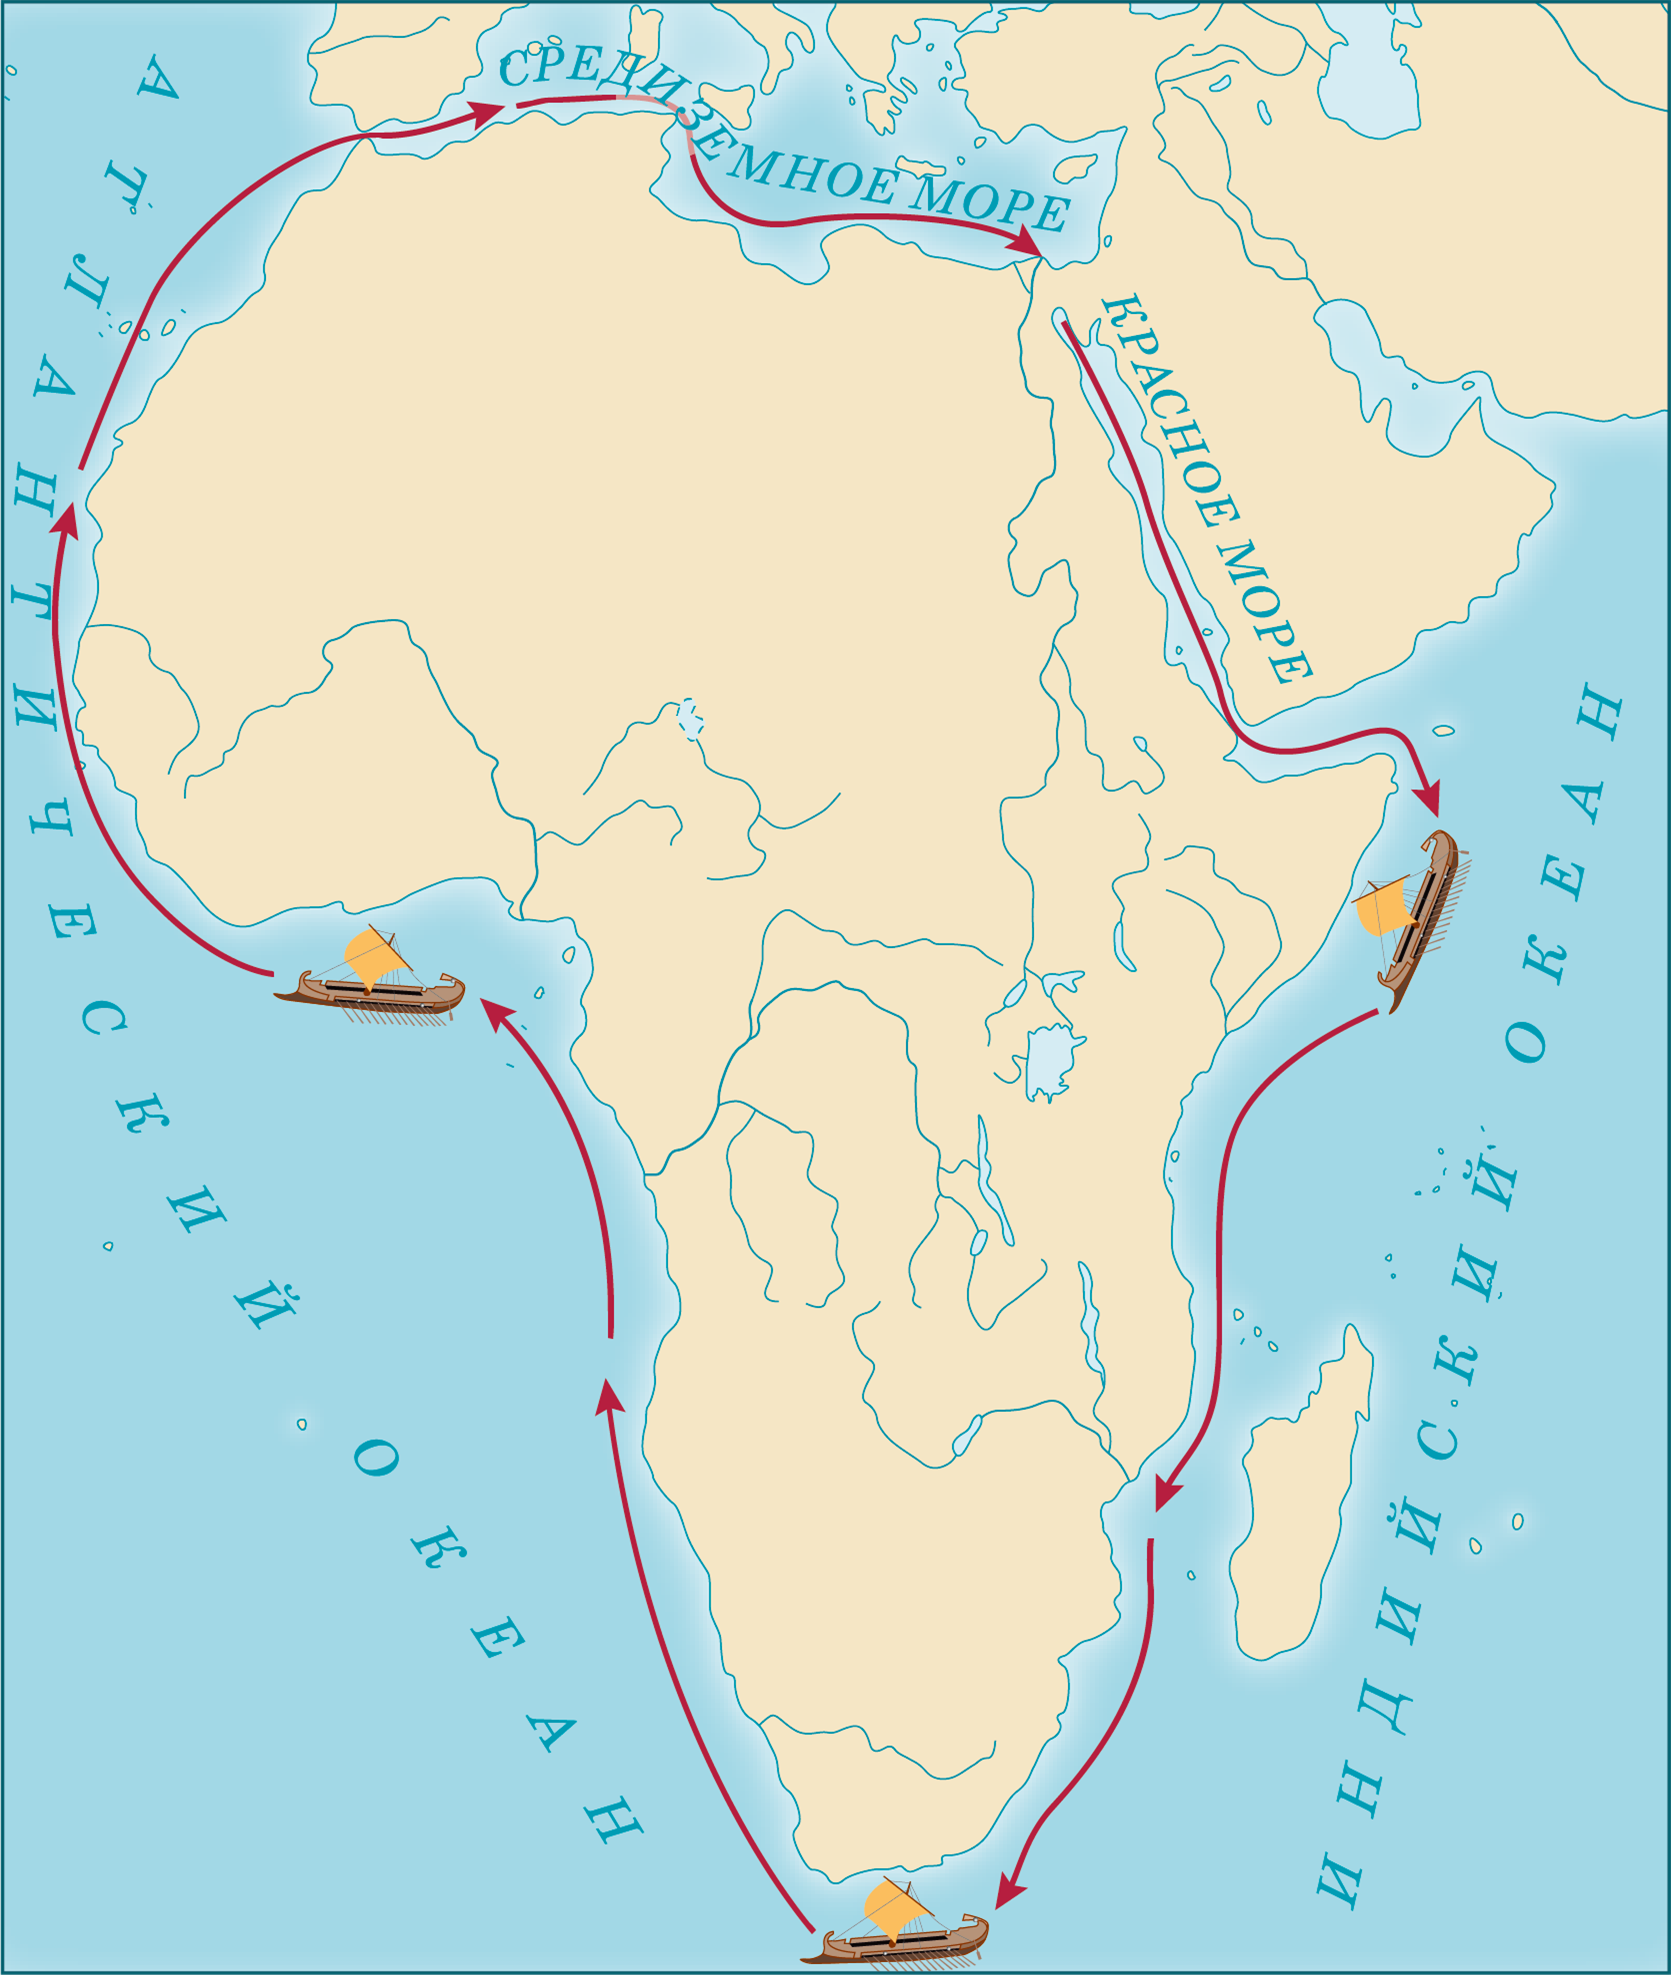 Финикийцев вокруг африки. Плавание финикийцев вокруг Африки из Египта. Путь плавания финикийцев вокруг Африки. Карта путешествия финикийцев вокруг Африки. Путешествие финикийцев вокруг Африки из Египта.